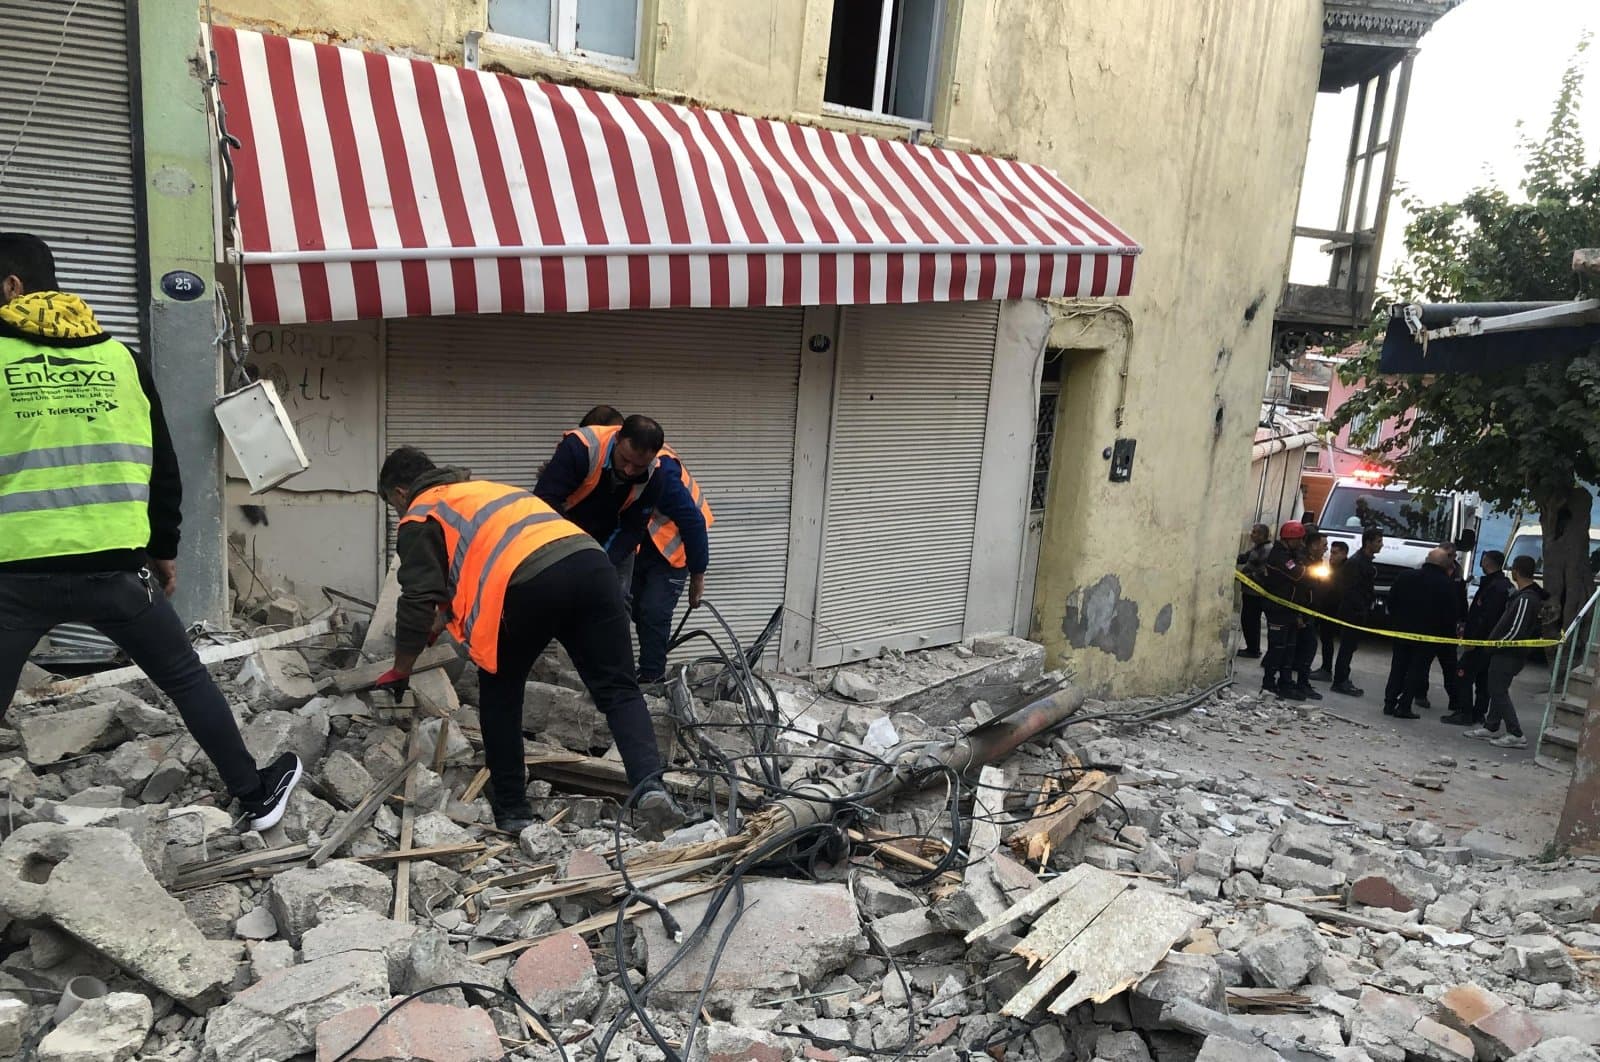 Földrengés rázta meg Törökországot, pánikot okozott a lakosság körében